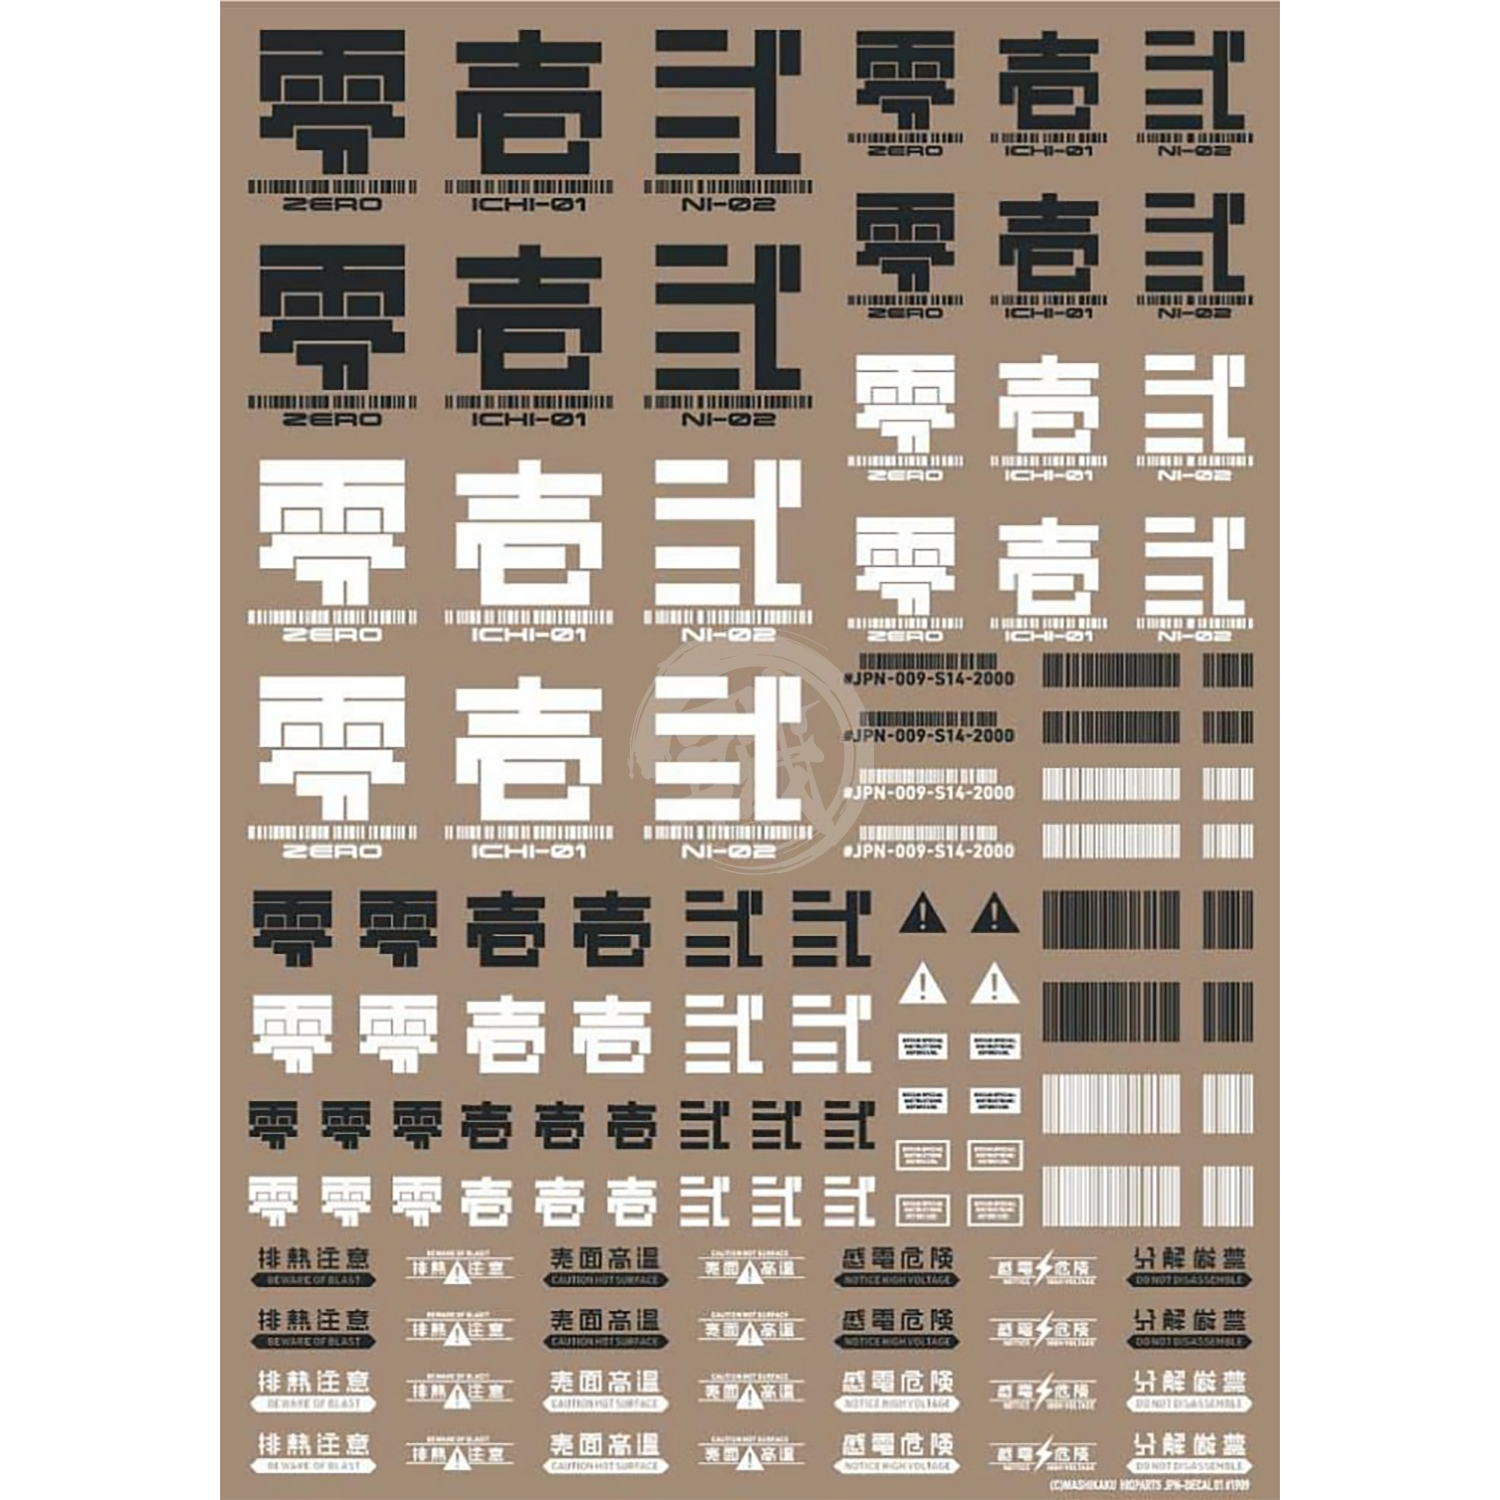 HIQParts - JPN-01 Kanji [Dark Grey] - ShokuninGunpla